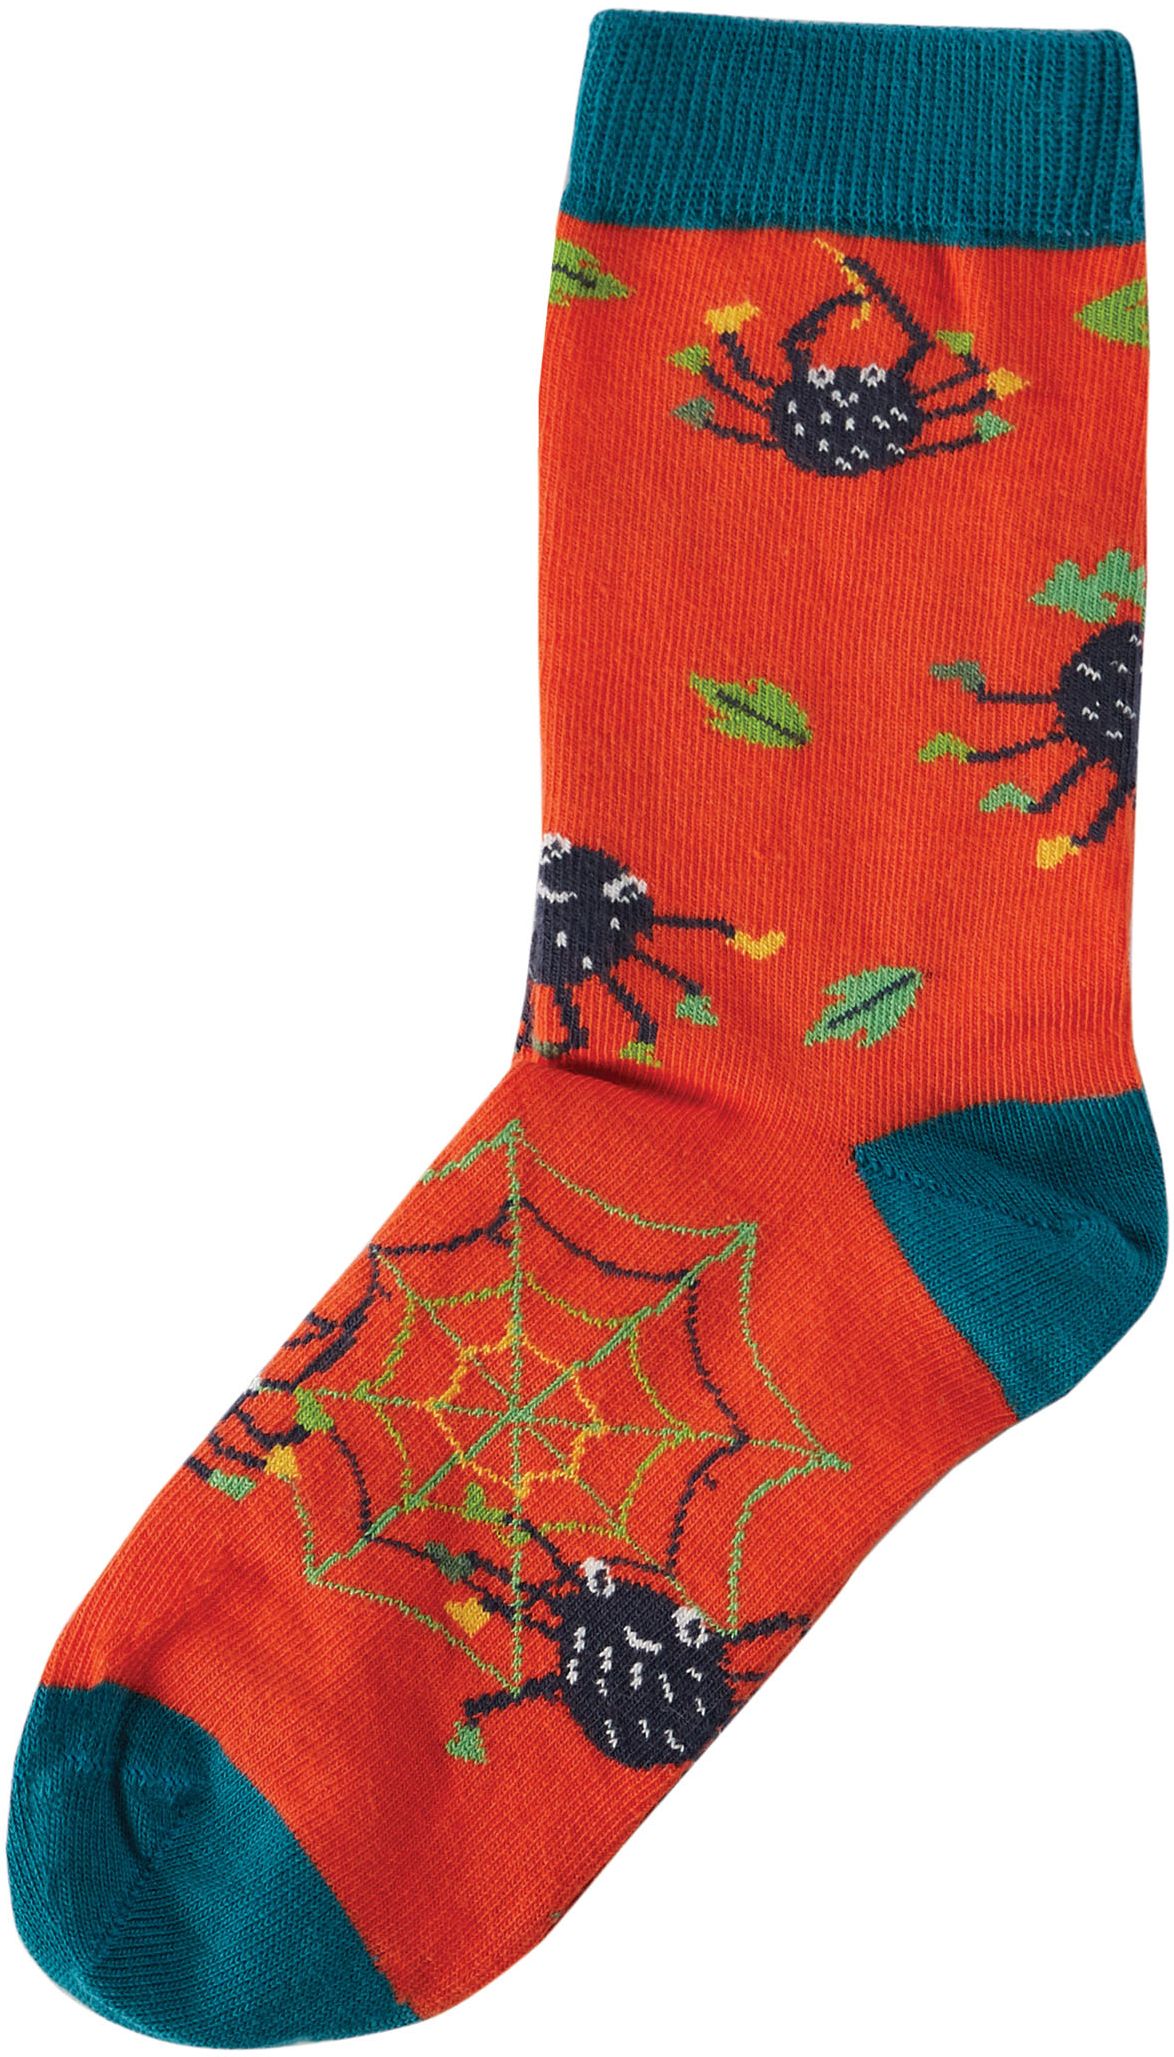 Kinder-Socken mit lustigen Spinnen